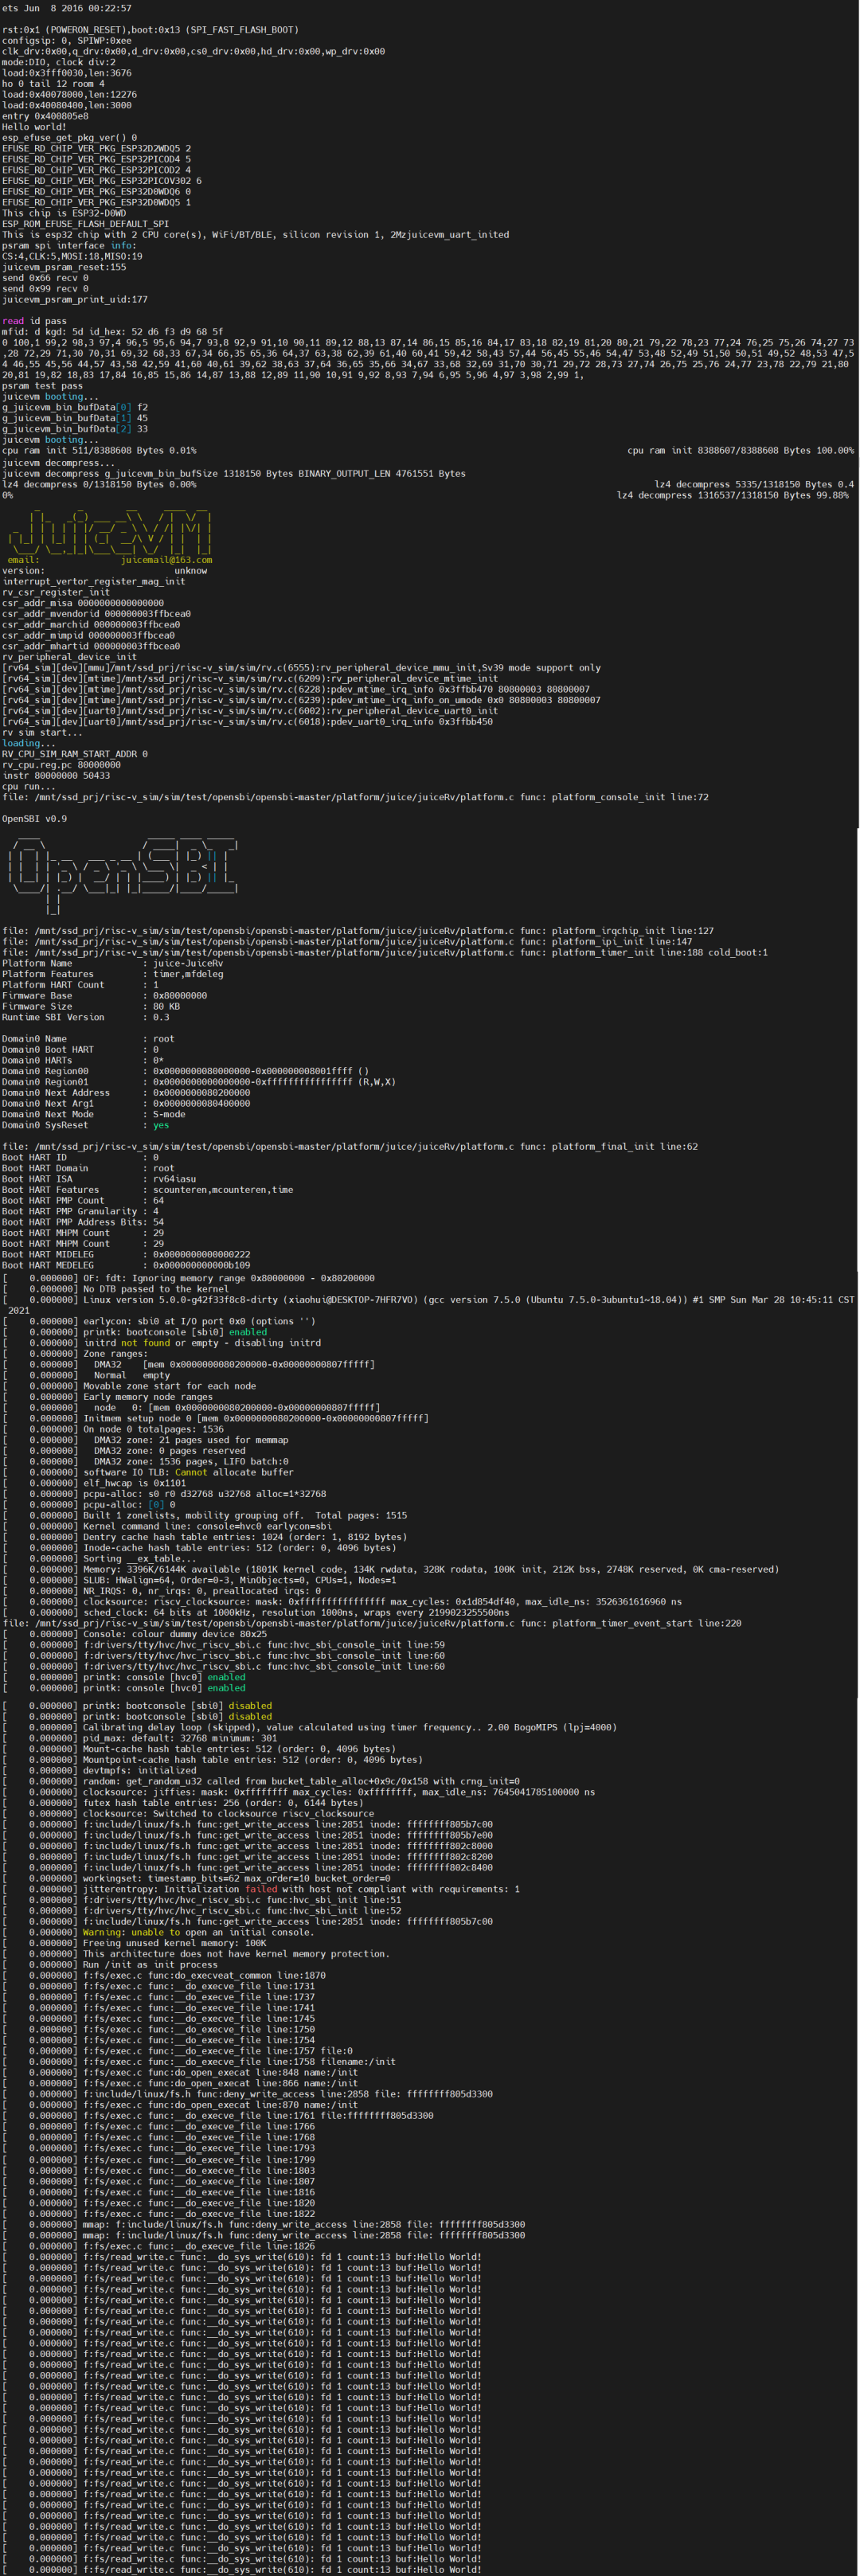 嵌入式linux移植_linux移植_嵌入linux u盘升级